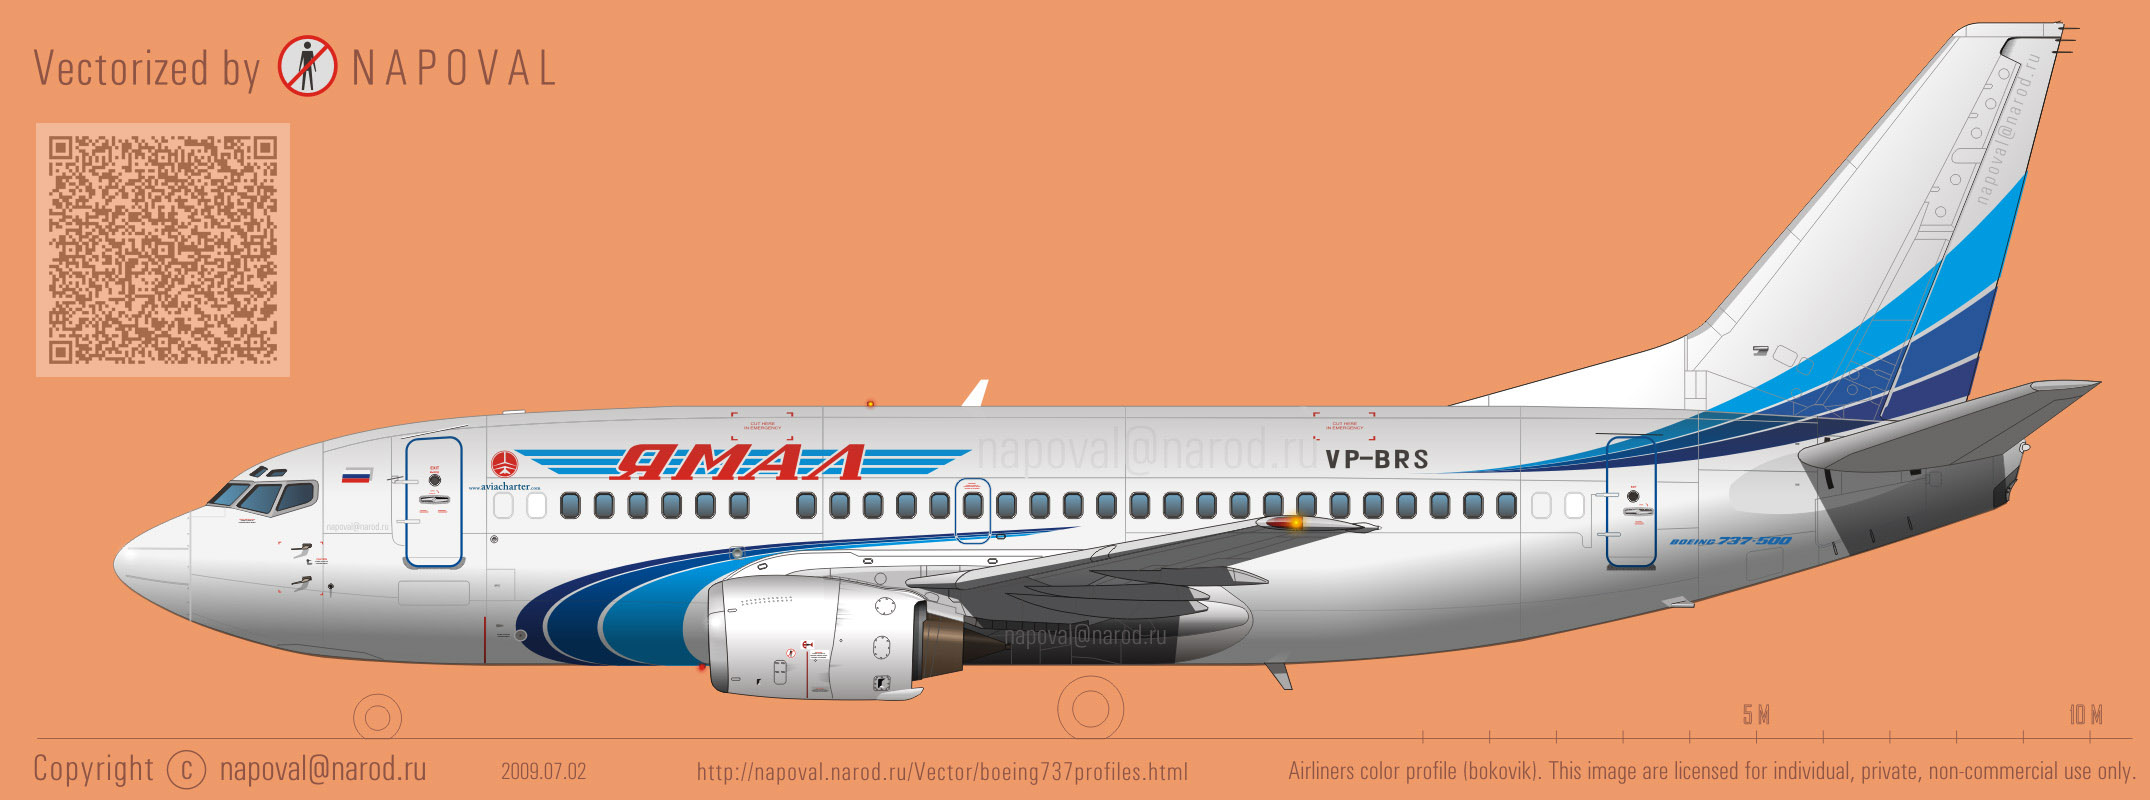 Профиль самолета Boeing 737 VP-BRS авиакомпании YAMAL очень большой размер/big size 2150x800